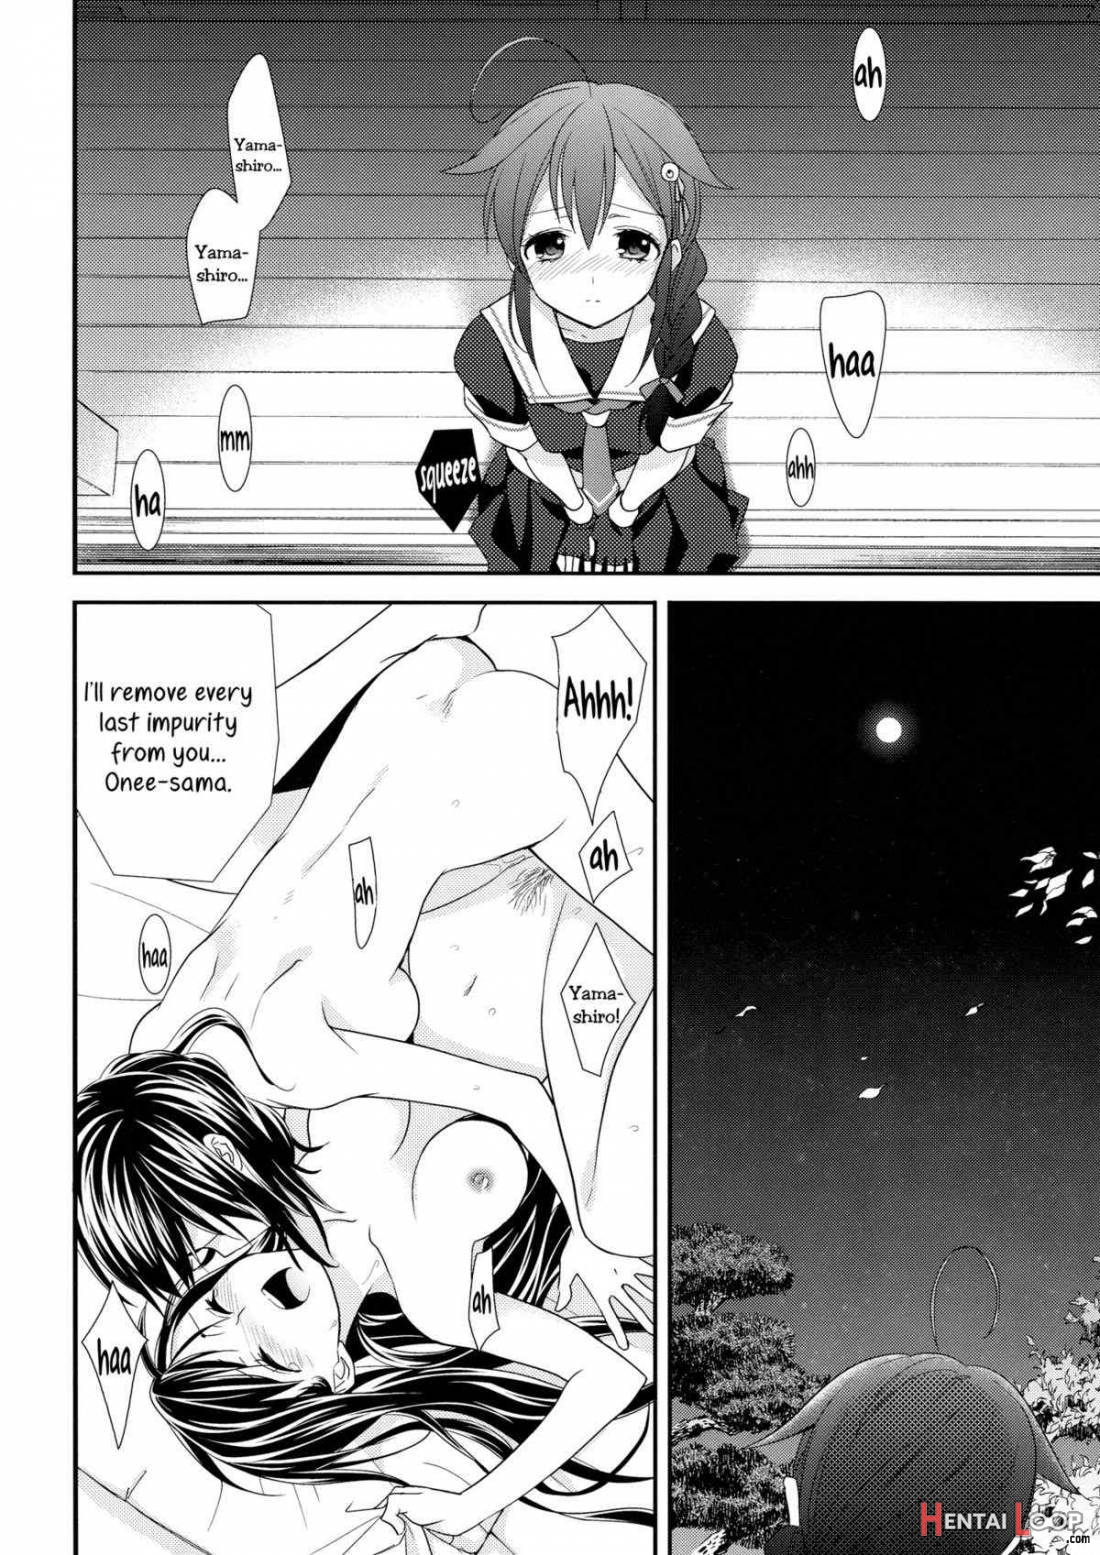 Yama Shigure page 4